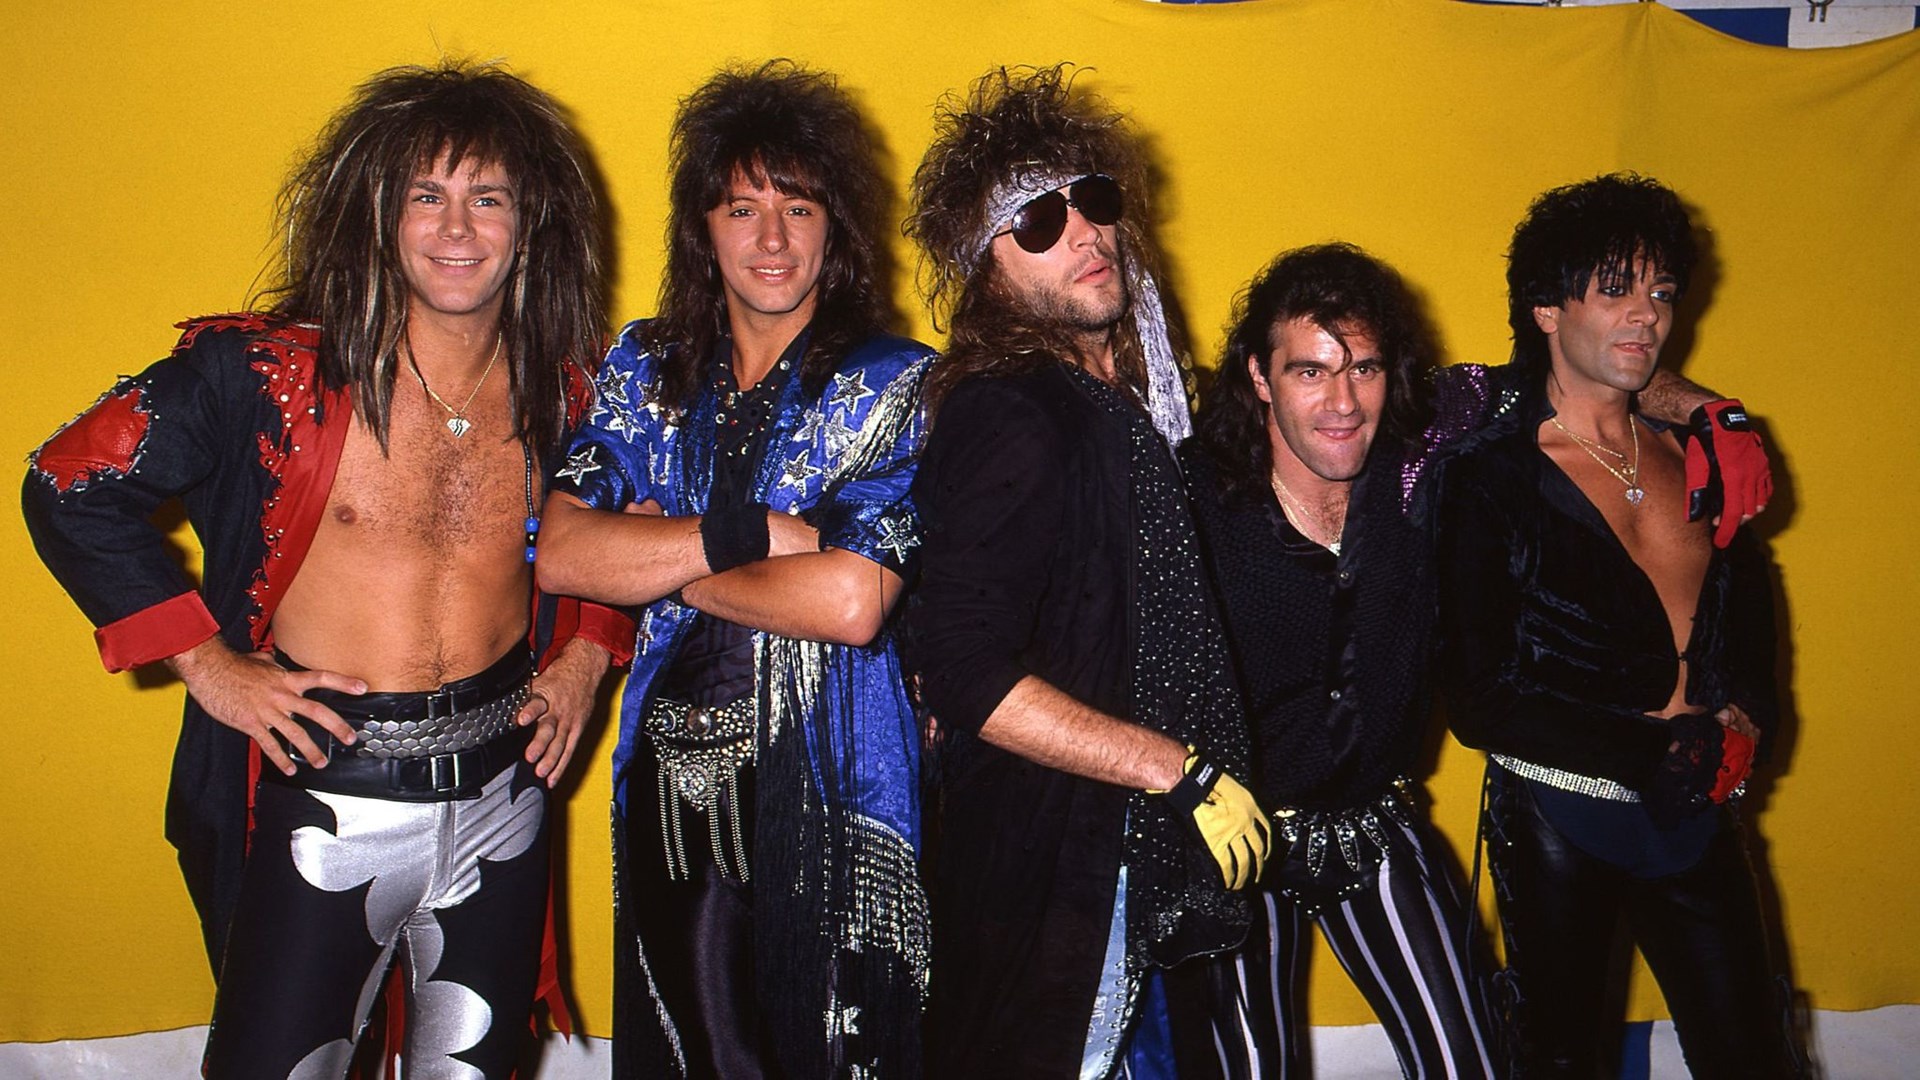 Σαν σήμερα το 1986 οι Bon Jovi κυκλοφορούν το τρίτο τους άλμπουμ “Slippery When Wet”